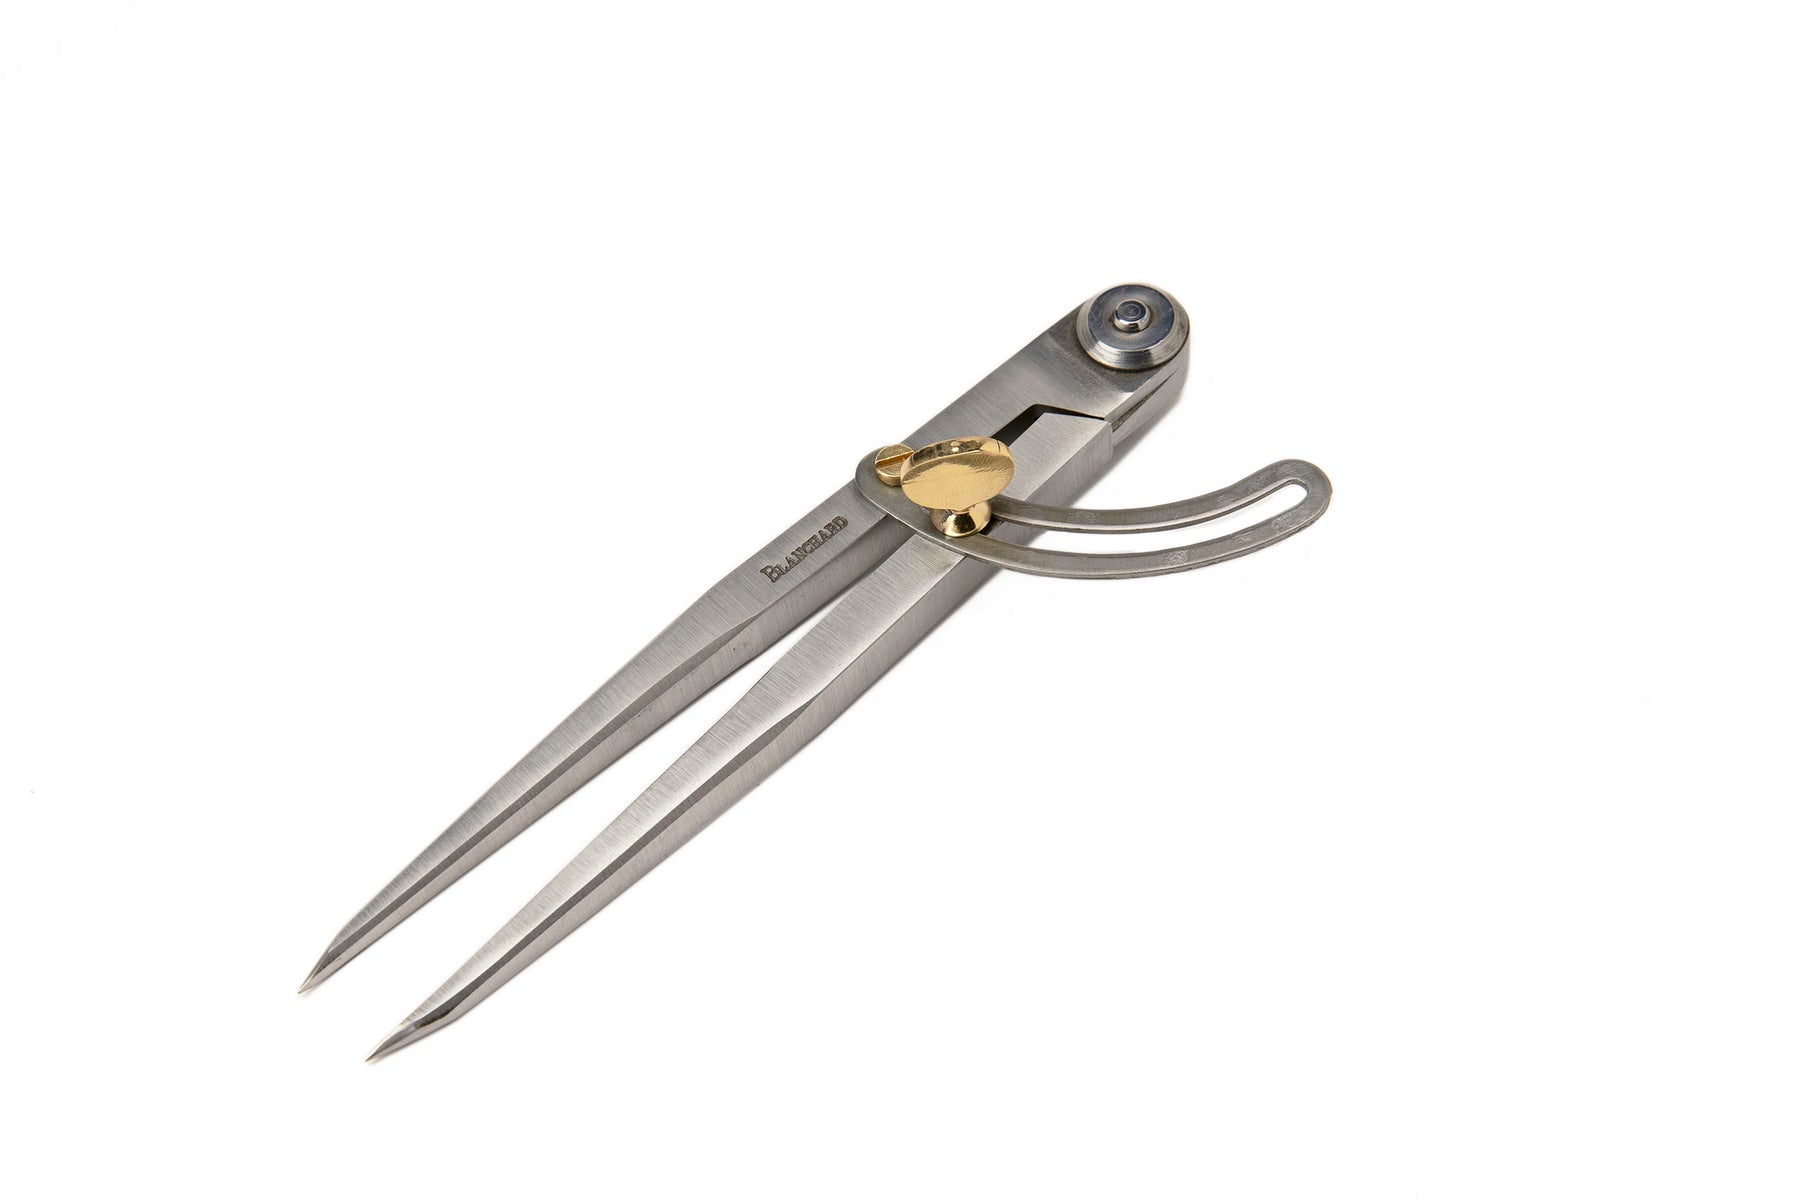 Vergez Blanchard Scissors / Shears (4 sizes). Leather cutting tool saddle